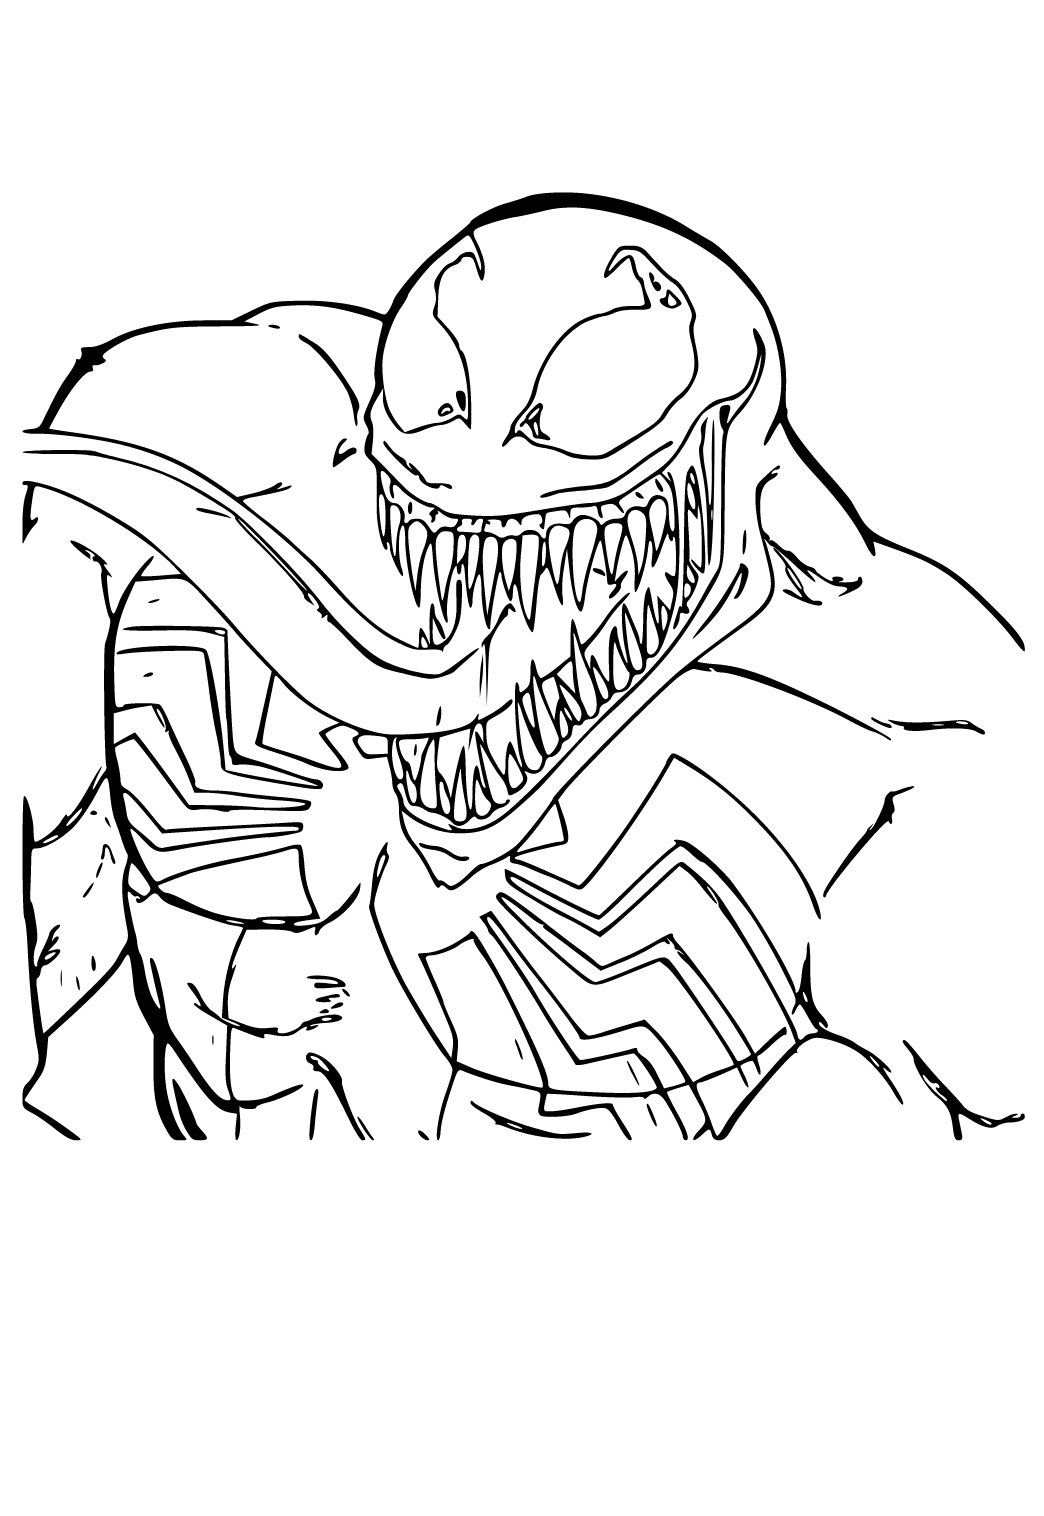 Venomas